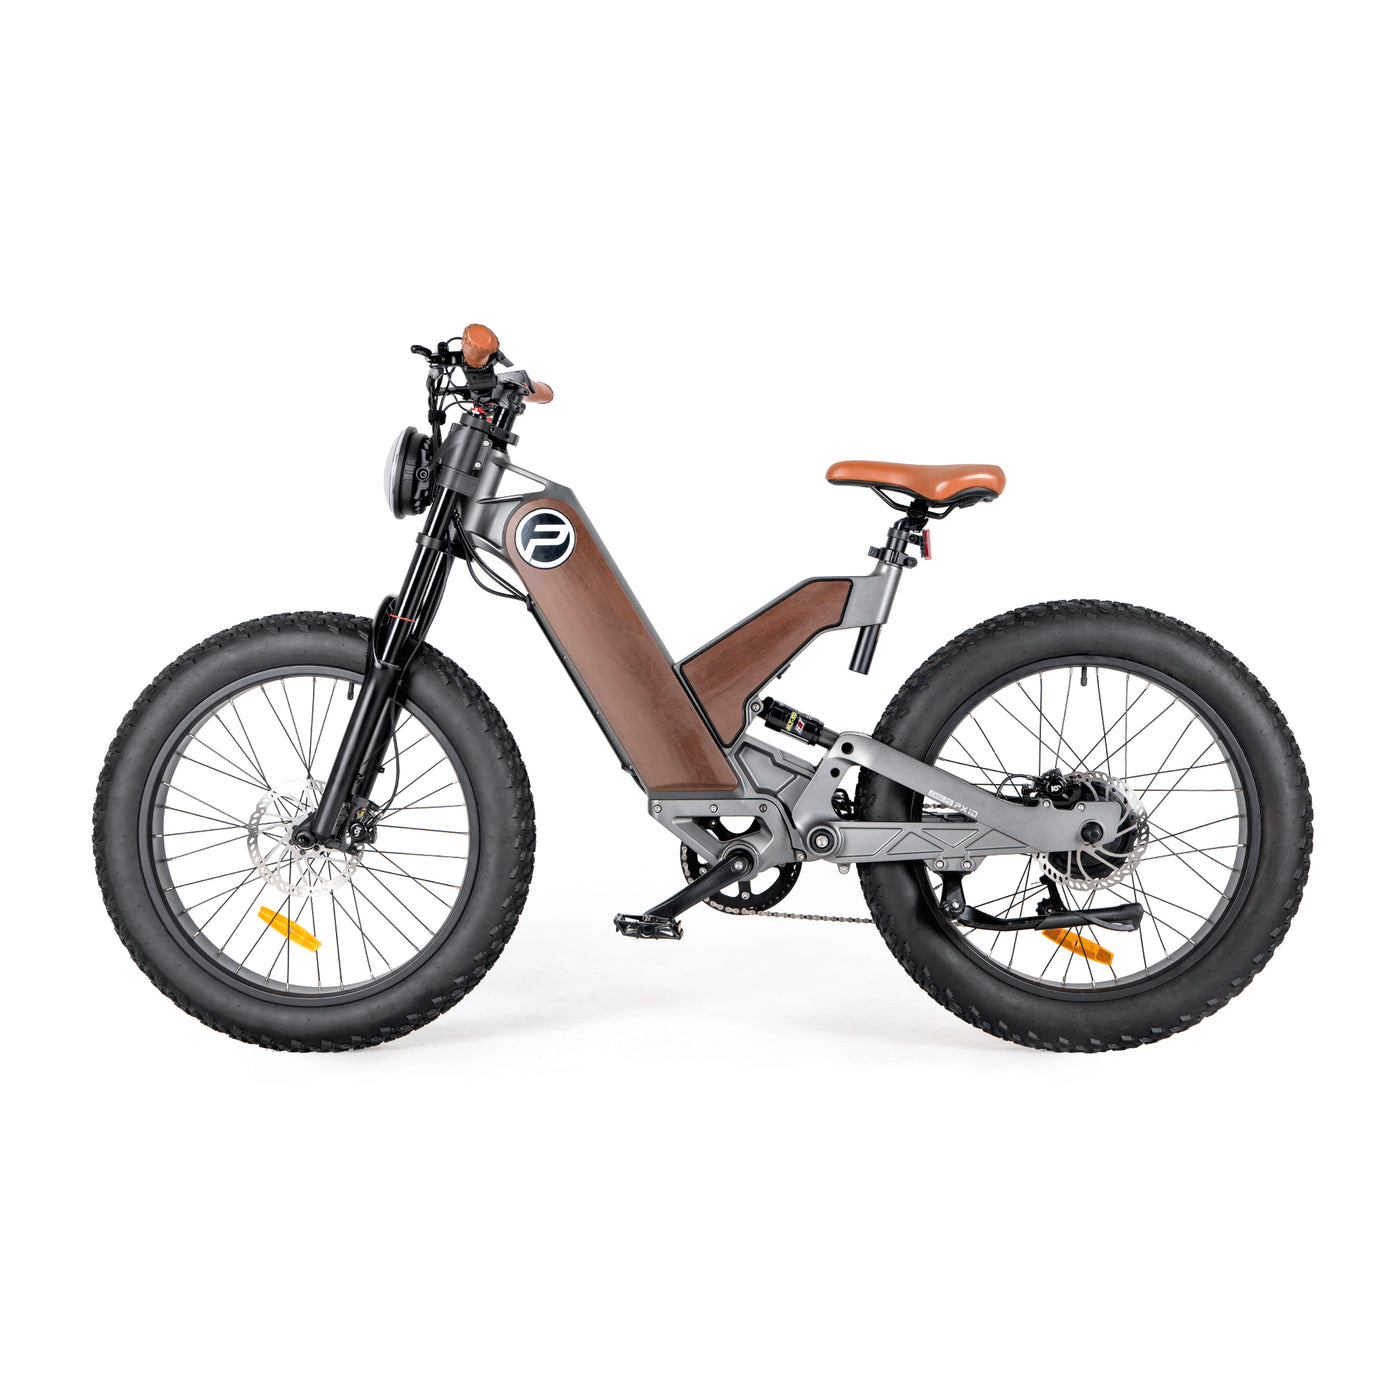 Mountain bike ibride elettriche per pneumatici grassi per tutti i terreni P5-U